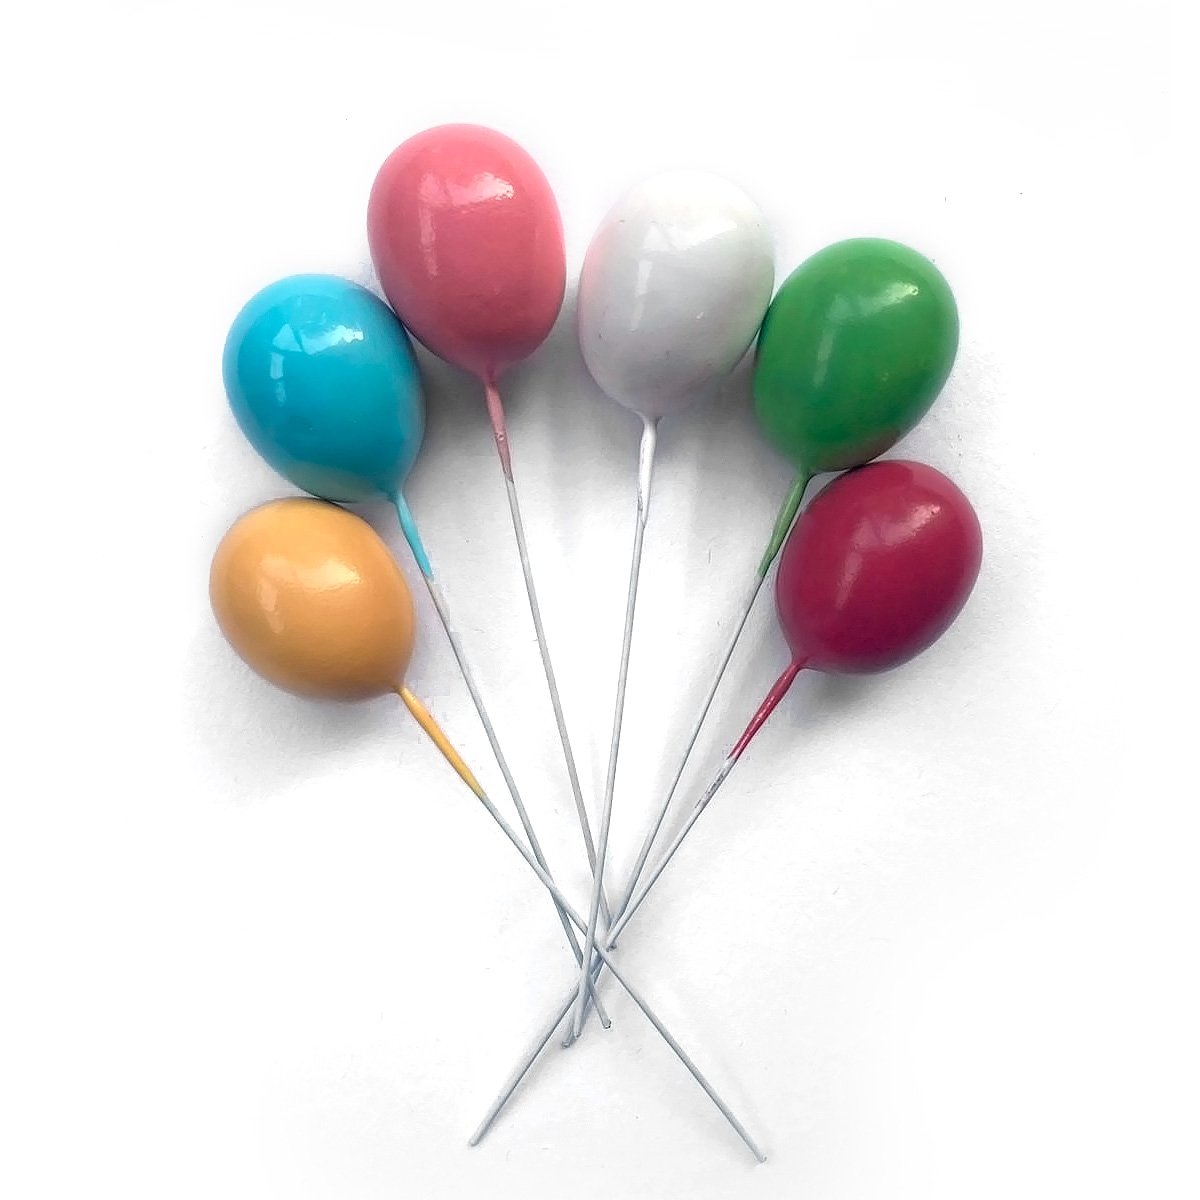 Topo de Bolo Wandinha - Loja de Balões, Artigos para Festas e